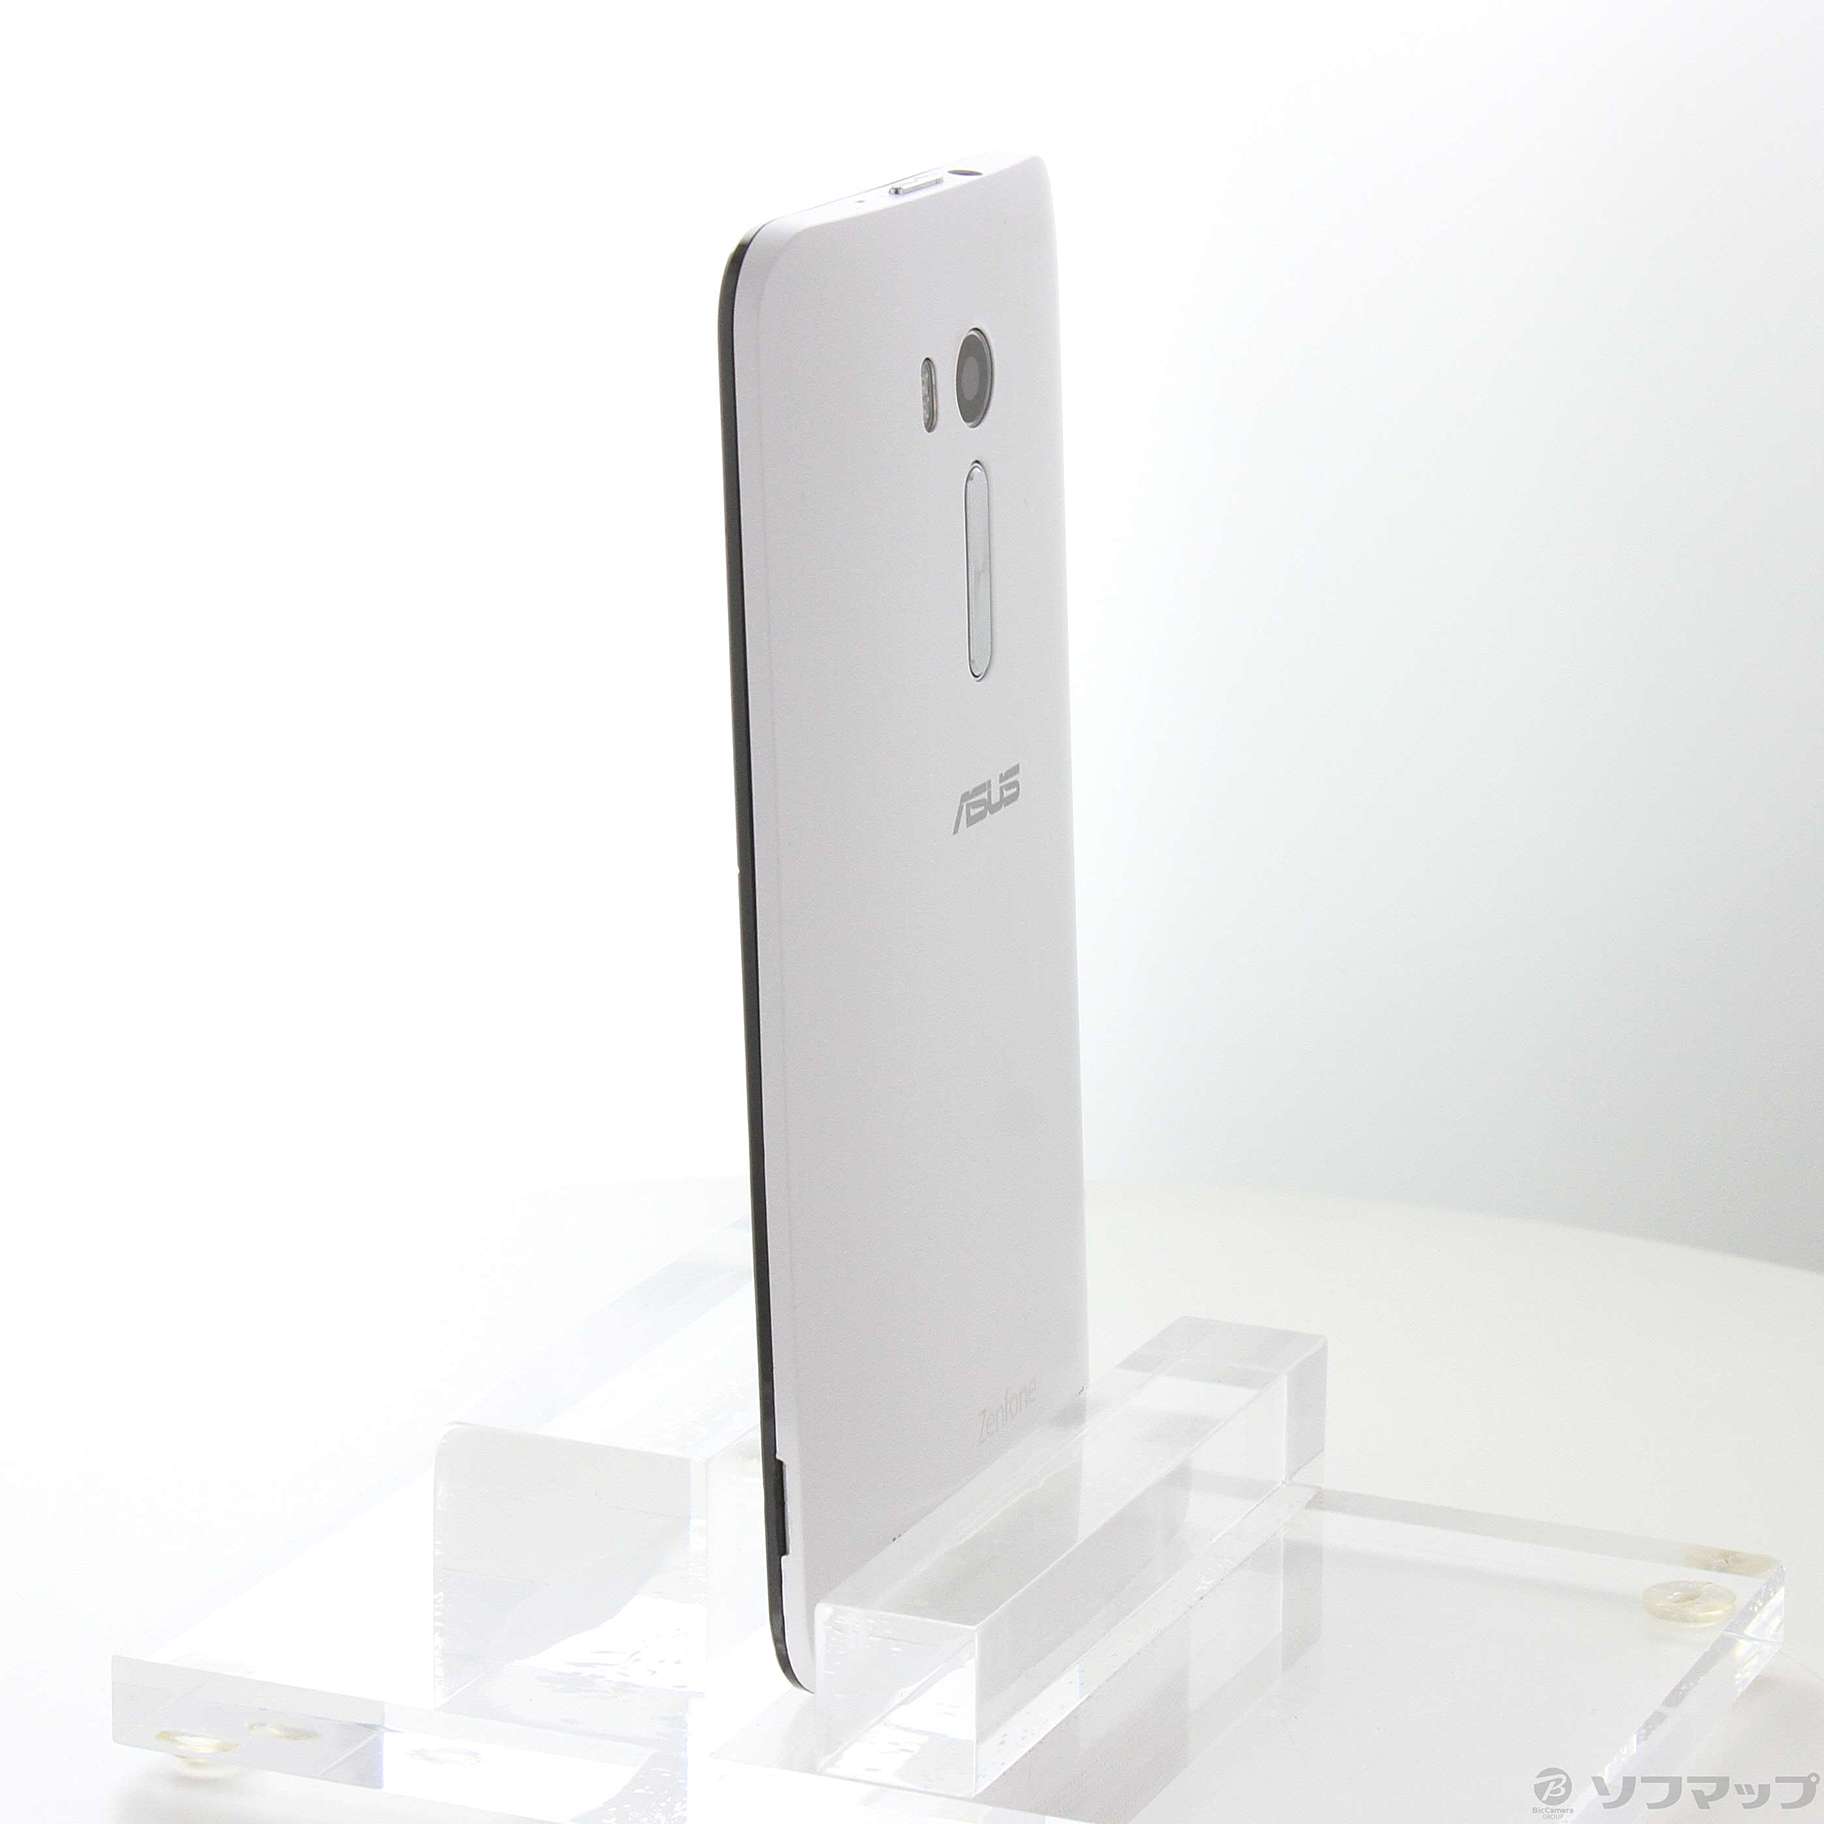 ZenFone Go 16GB ホワイト ZB551KL-WH16 SIMフリー